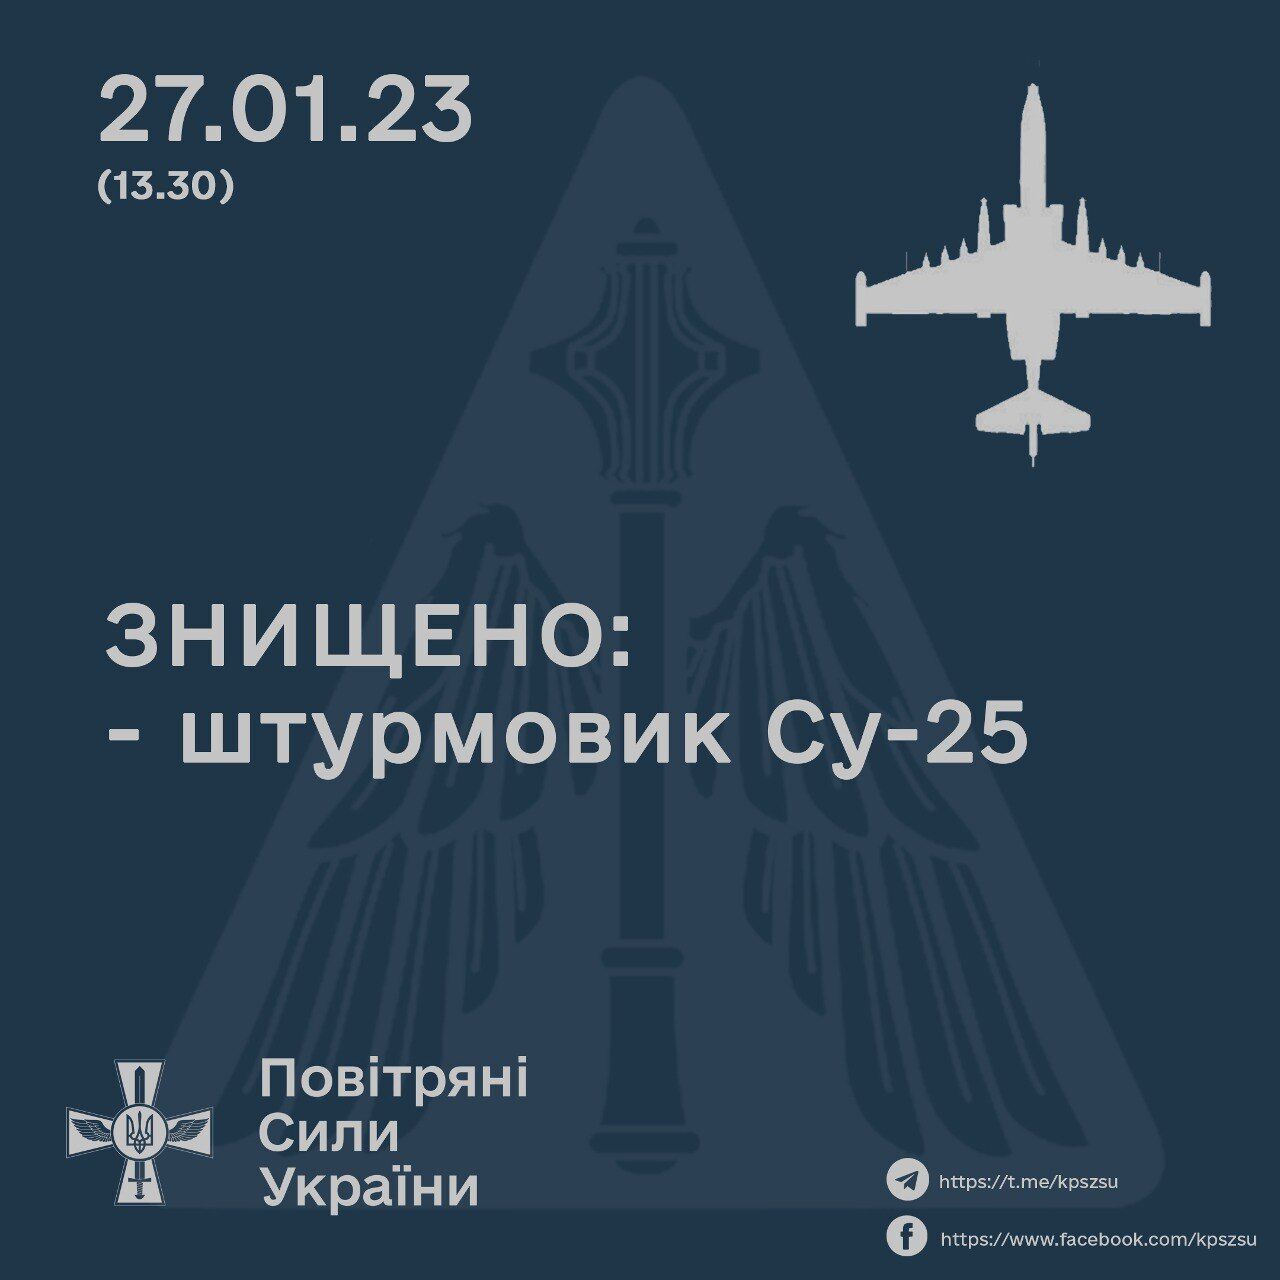 Украинские защитники "приземлили" очередной вражеский штурмовик Су-25